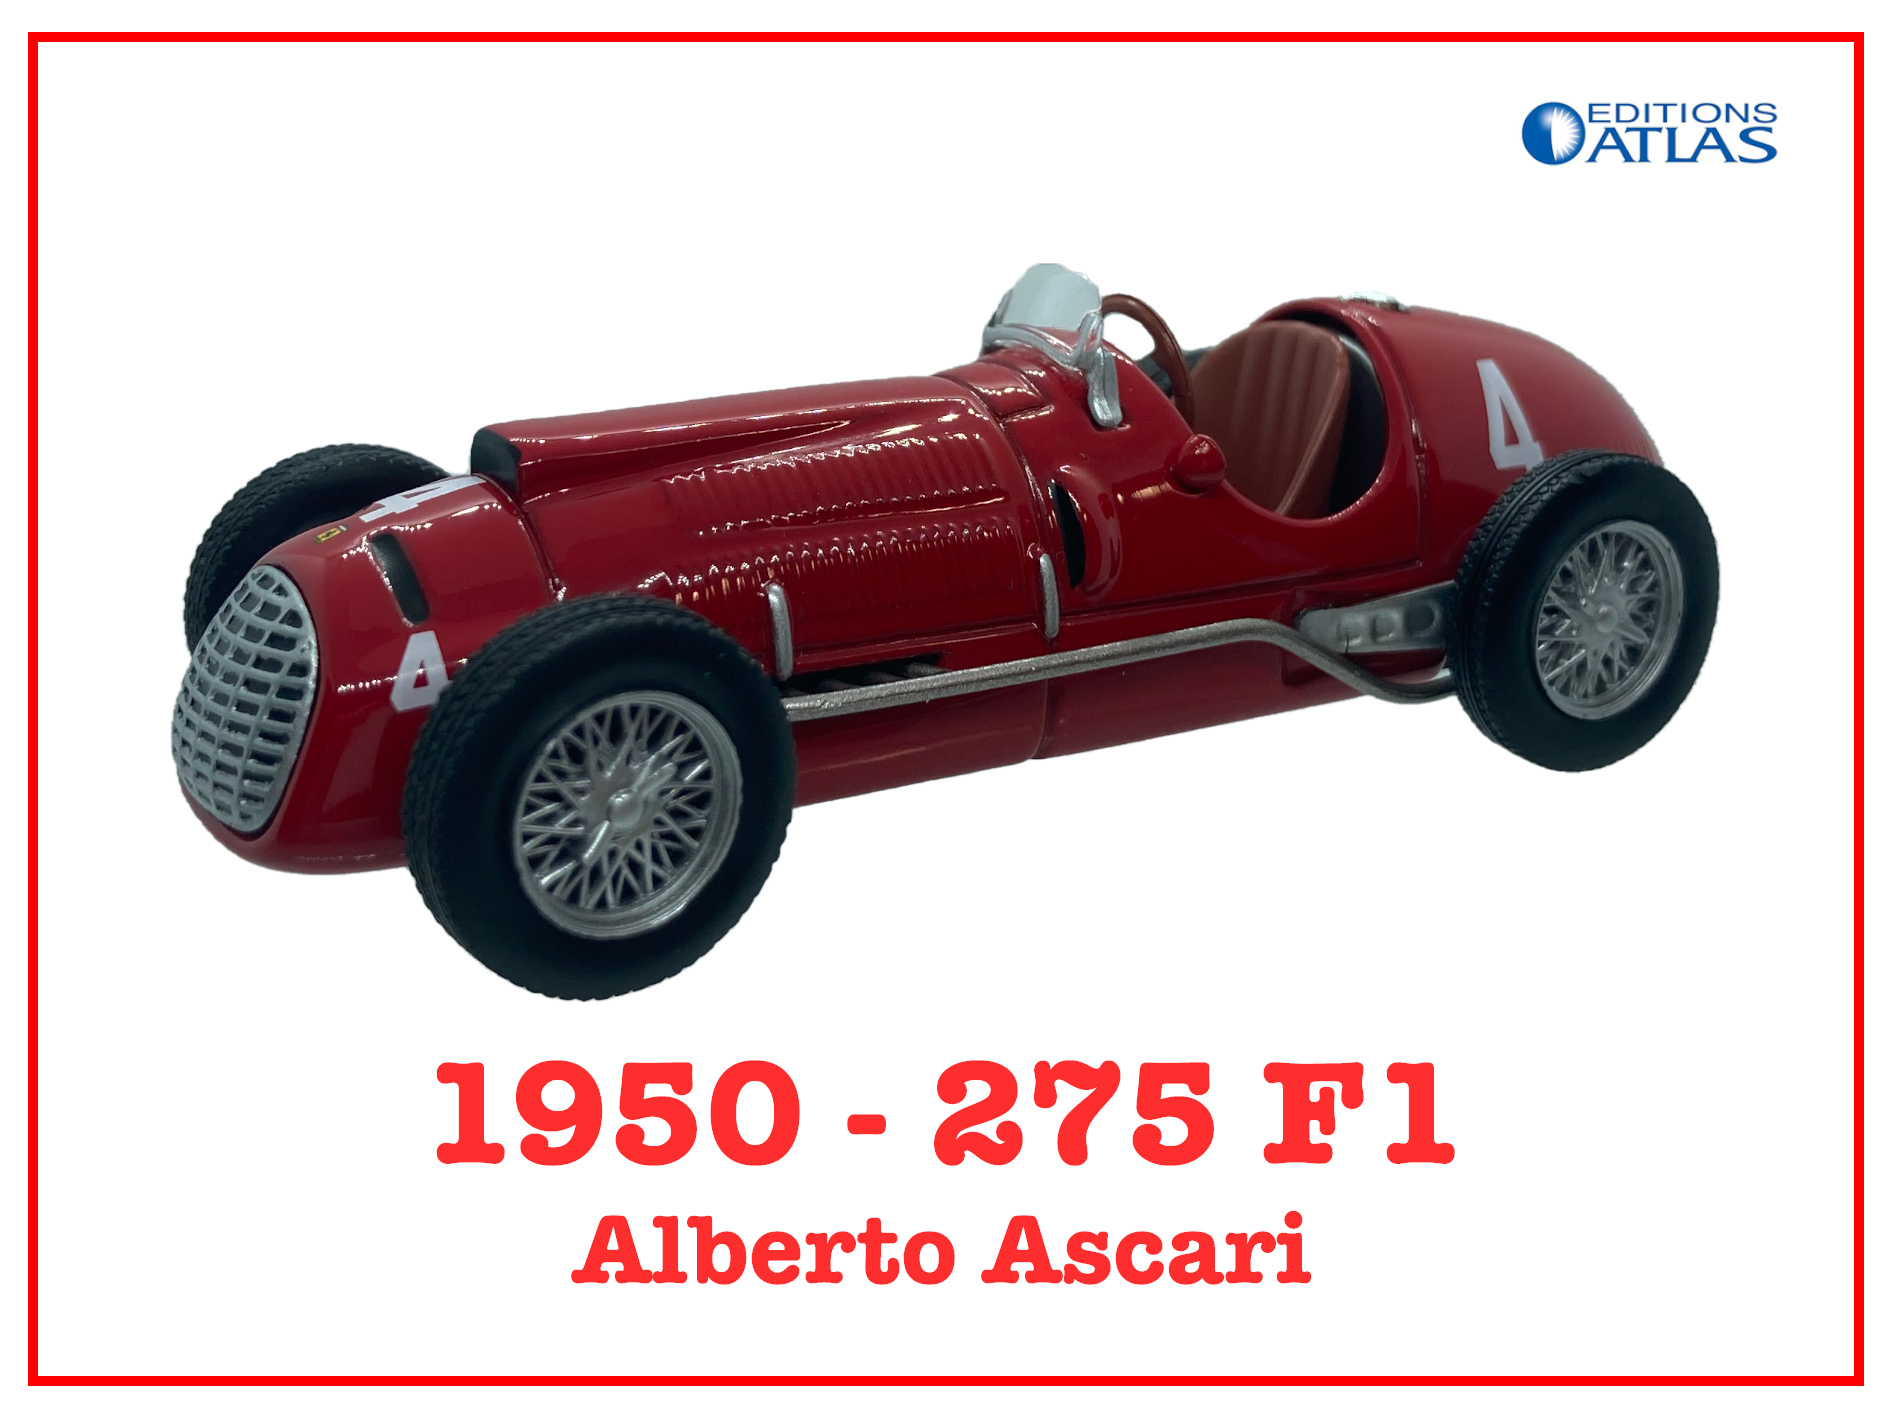 Immagine 275 F1 Alberto Ascari